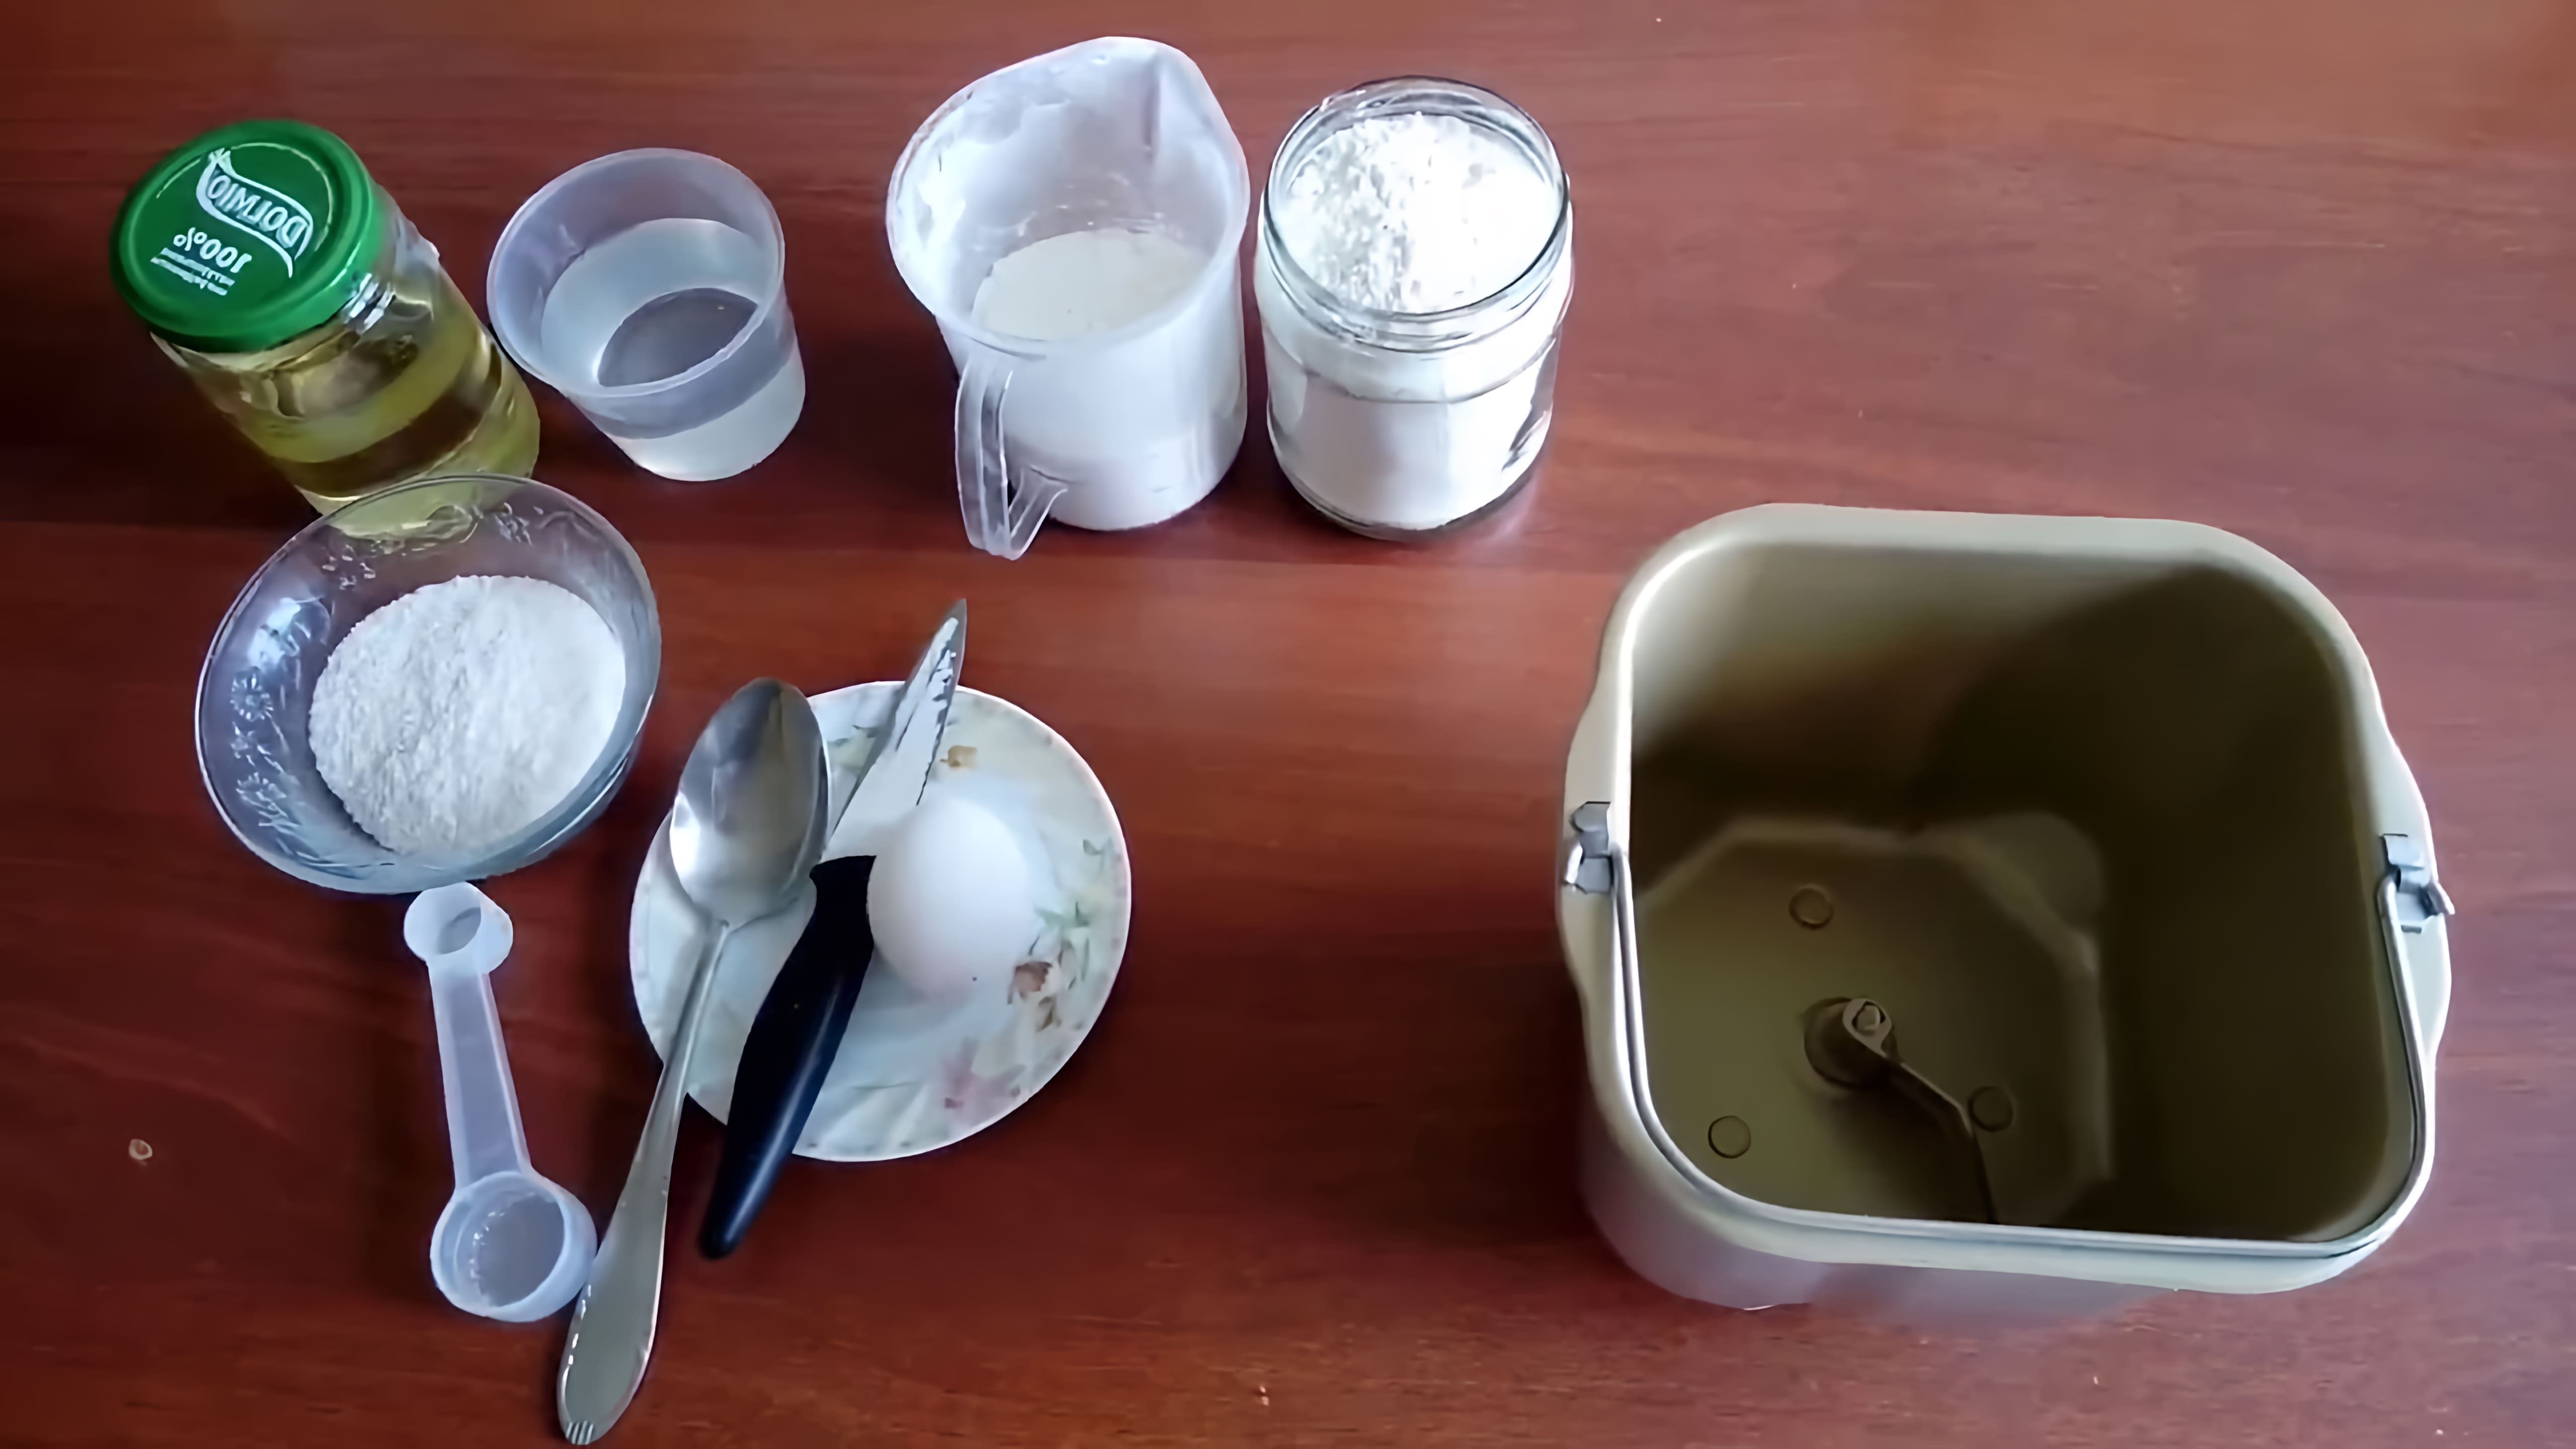 В этом видео демонстрируется процесс приготовления теста для пельменей или вареников в хлебопечке